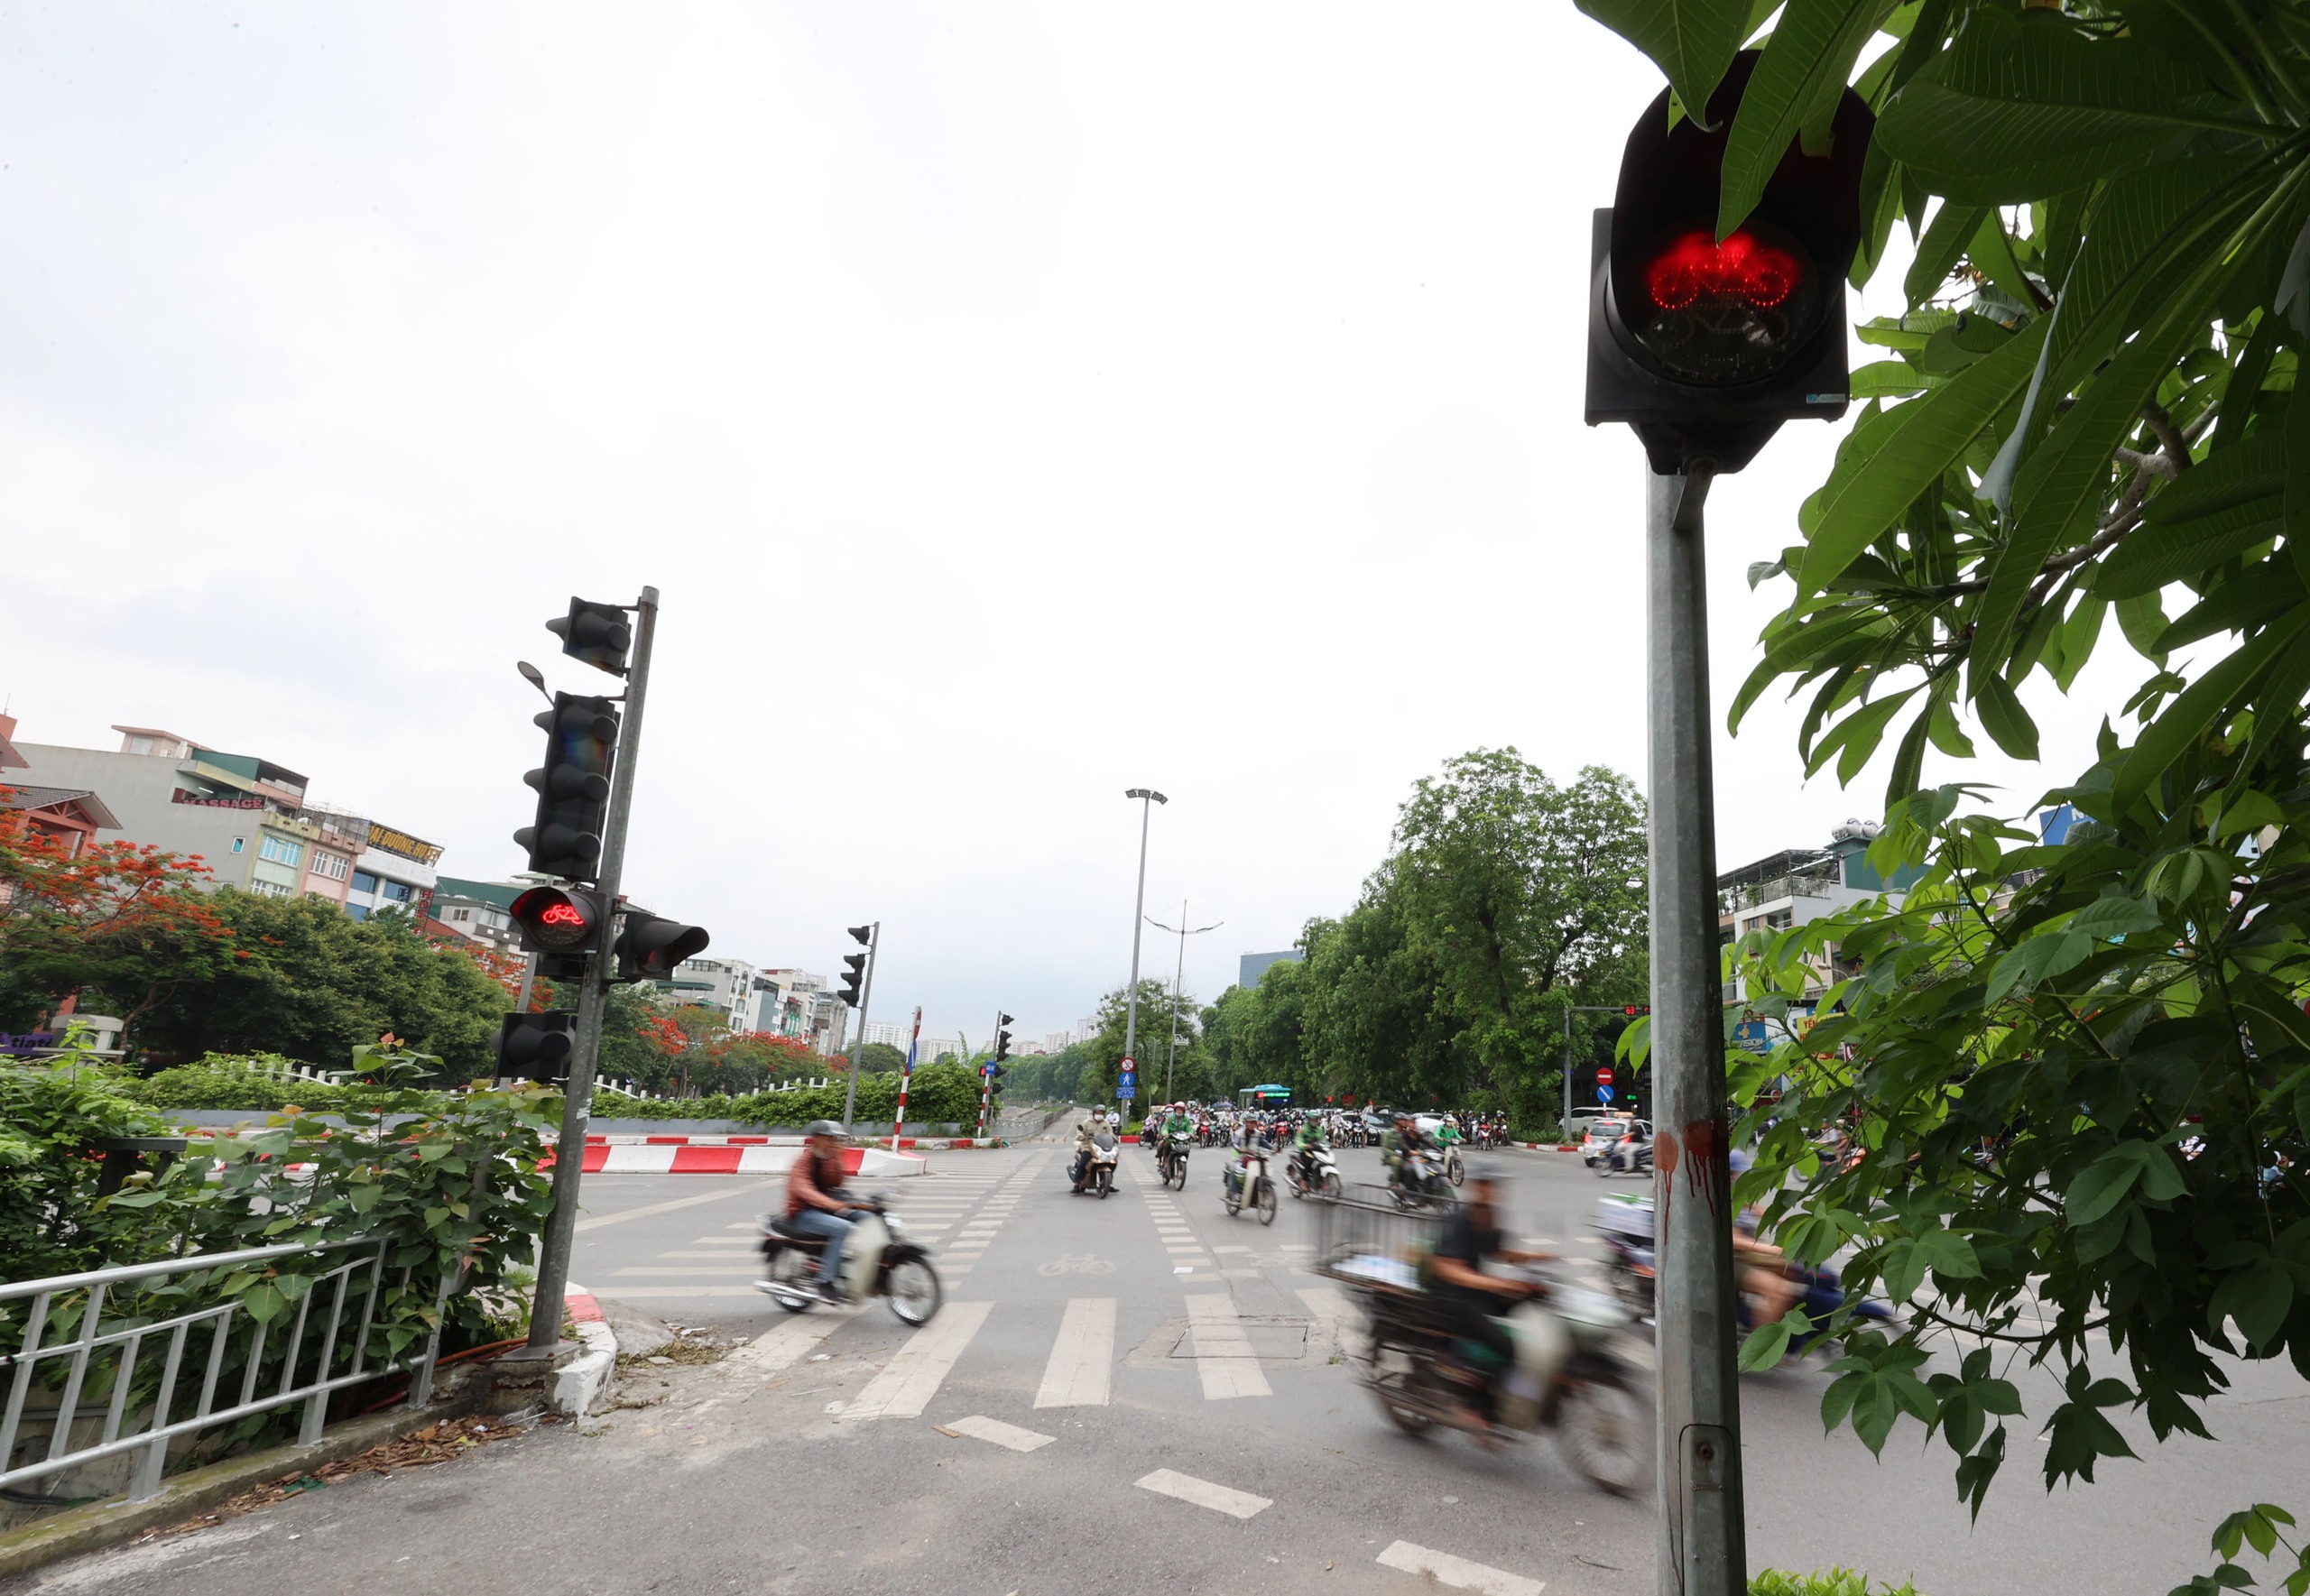 Hình ảnh thảm cỏ xanh mướt, hút mắt trên con đường chỉ dành riêng cho người đi bộ, xe đạp ở Hà Nội- Ảnh 13.